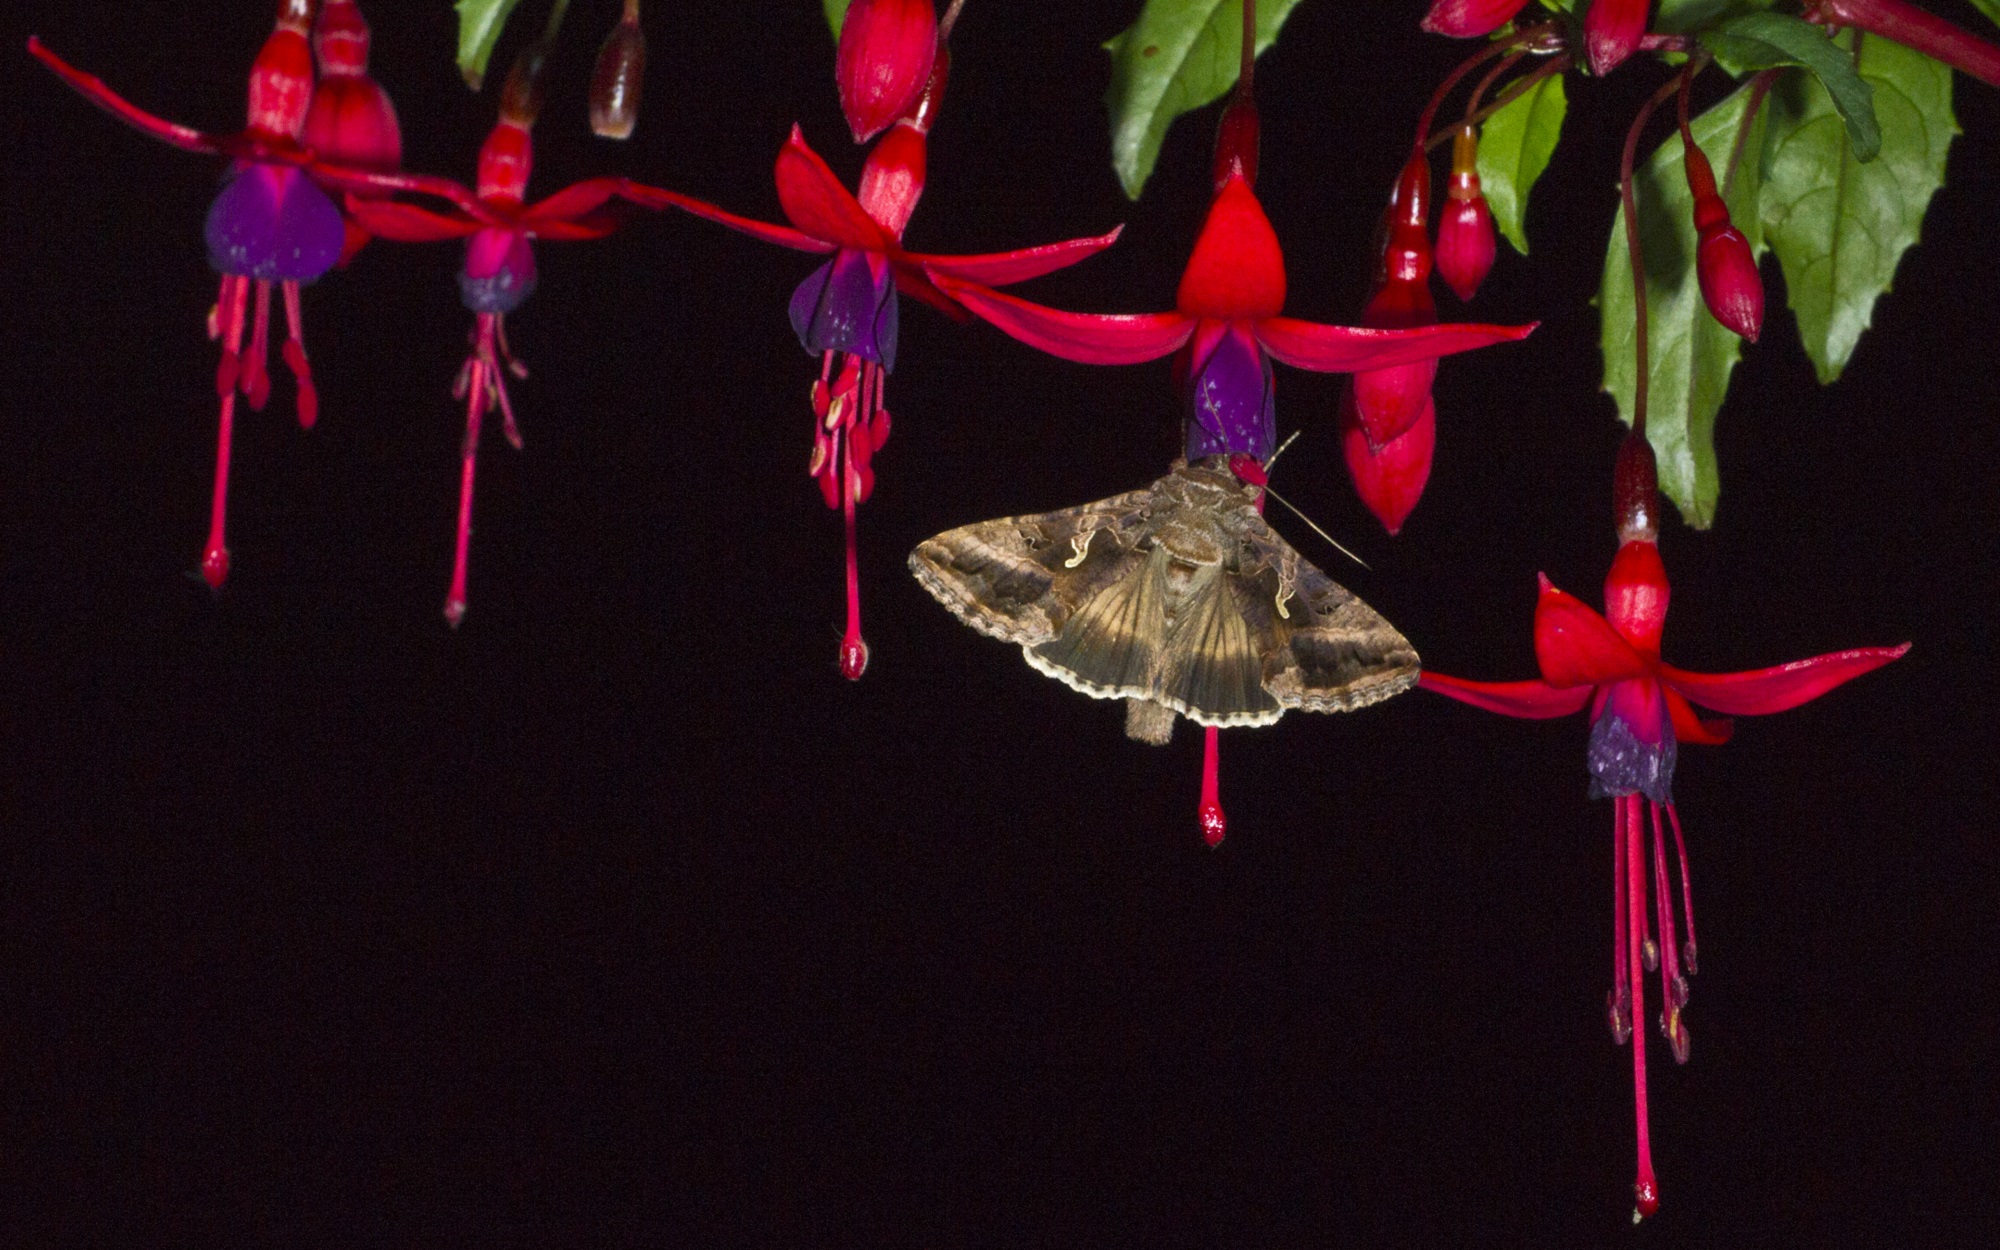 Silver Y moth feeding on long fuschia flowers